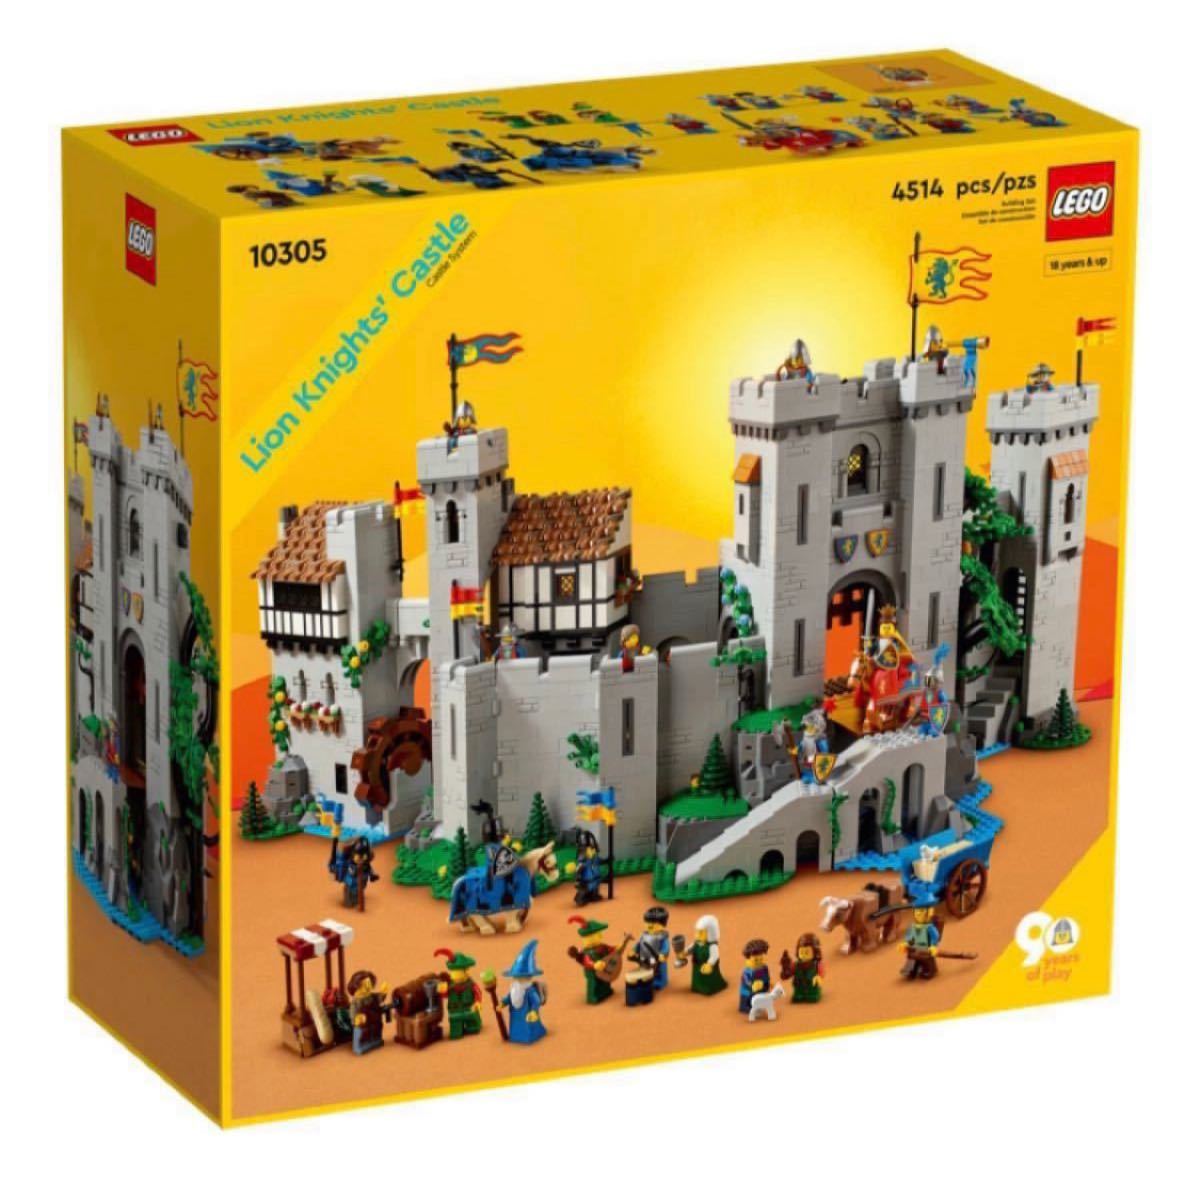 即日発送 海外限定 日本未発売 LEGO 910001 森の人の城 | レゴ